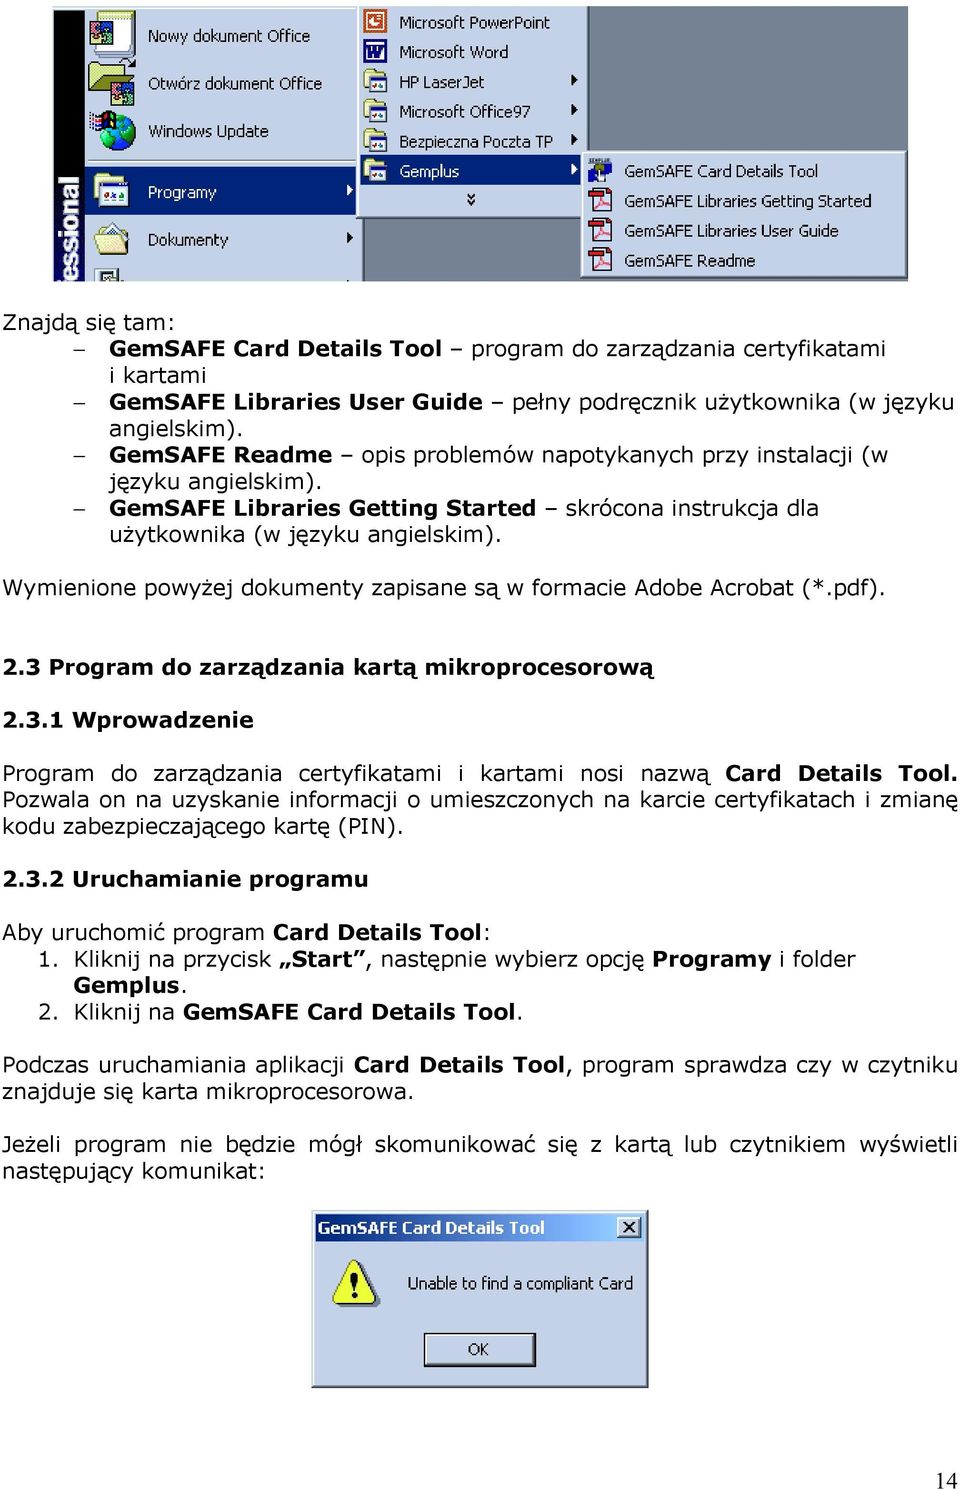 Wymienione powyżej dokumenty zapisane są w formacie Adobe Acrobat (*.pdf). 2.3 Program do zarządzania kartą mikroprocesorową 2.3.1 Wprowadzenie Program do zarządzania certyfikatami i kartami nosi nazwą Card Details Tool.